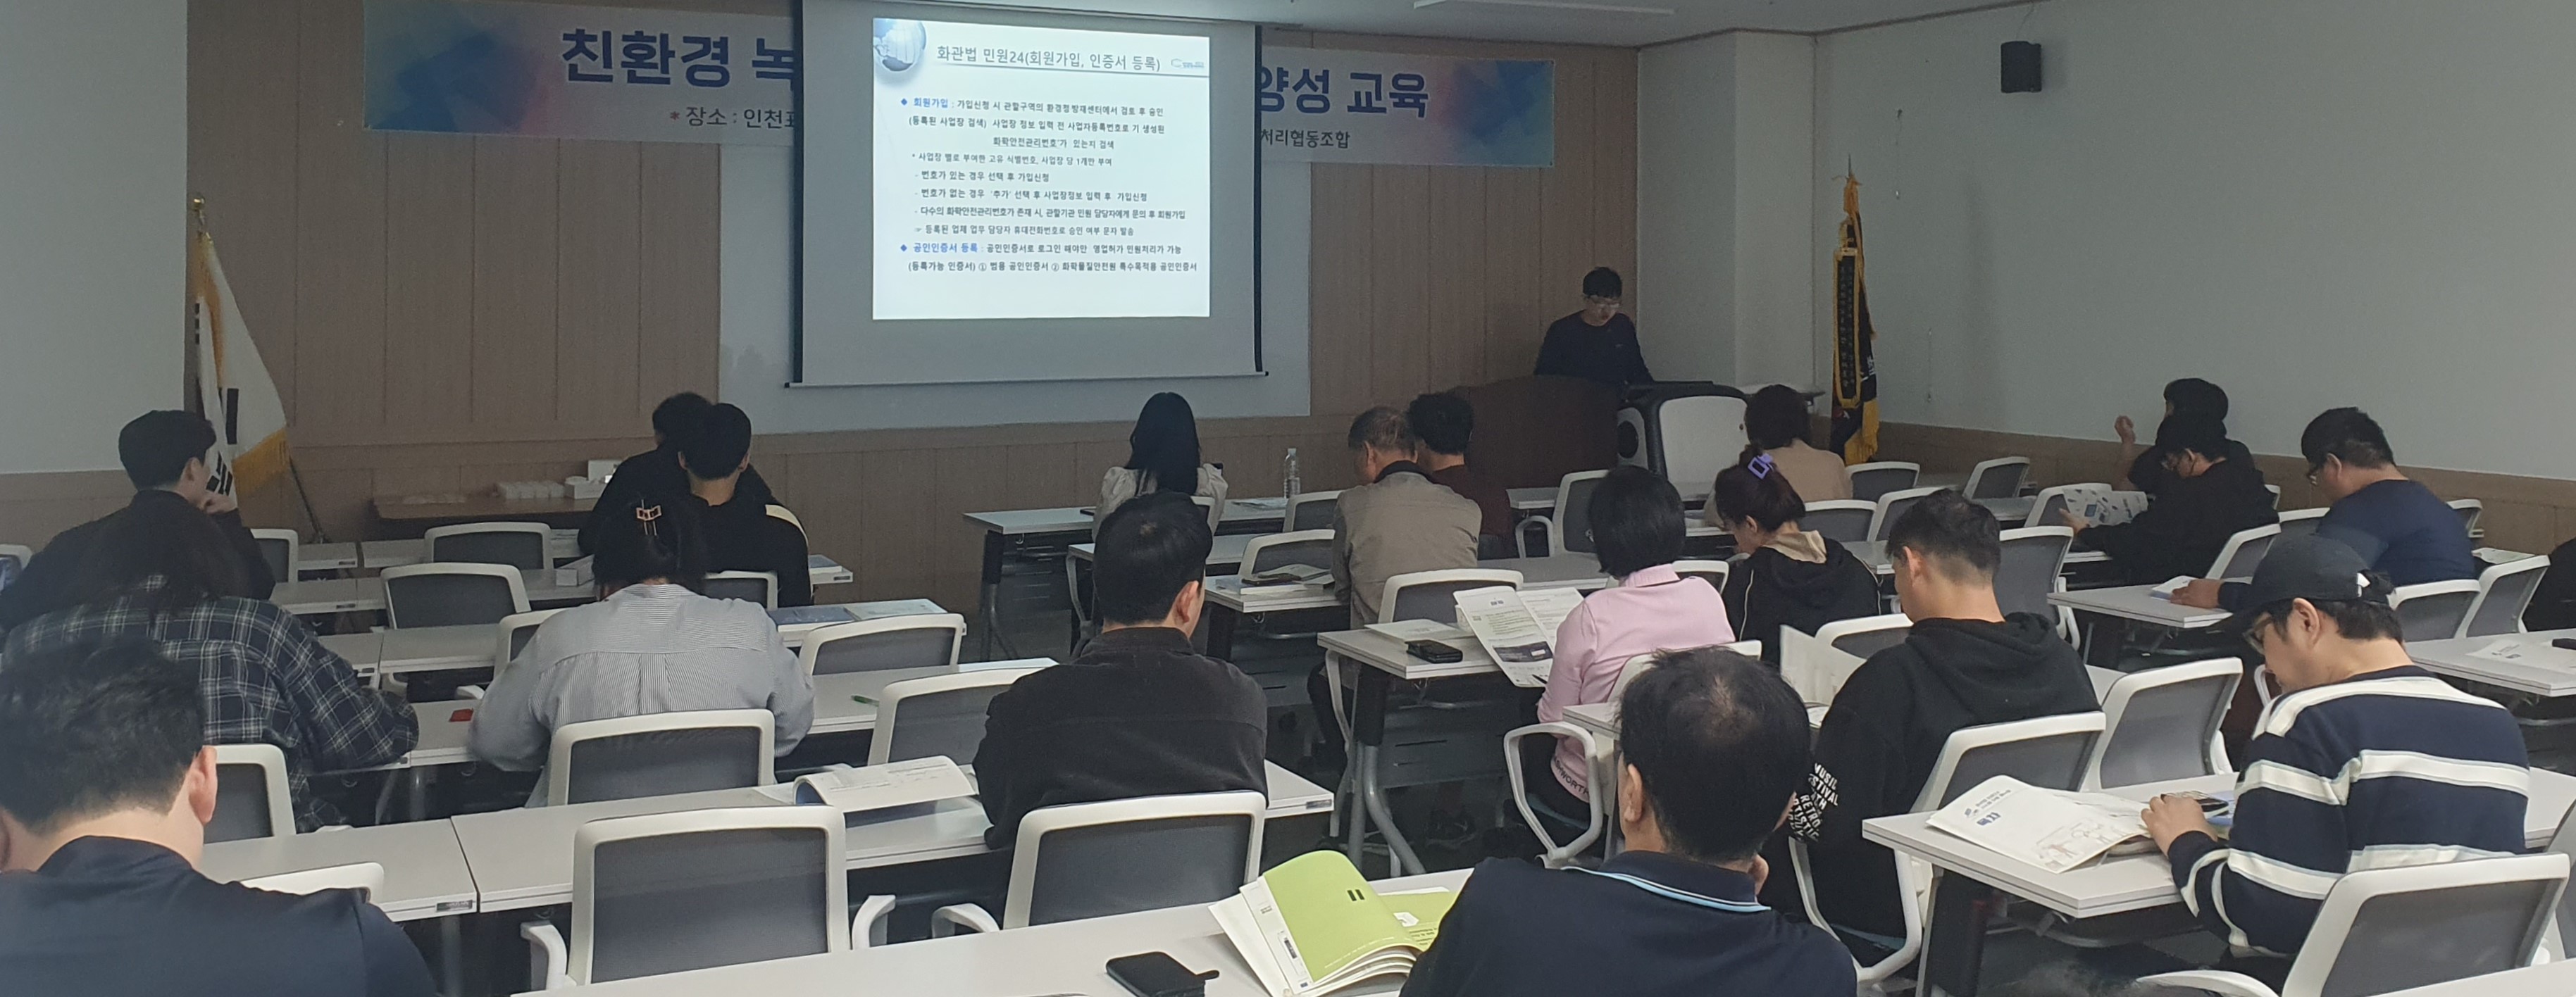 사진2. 시흥화학재난합동방재센터가 10월31일, 컨설팅 참여 사업장을 대상으로 「화학물질관리법」 관련 교육을 진행하고 있다. 